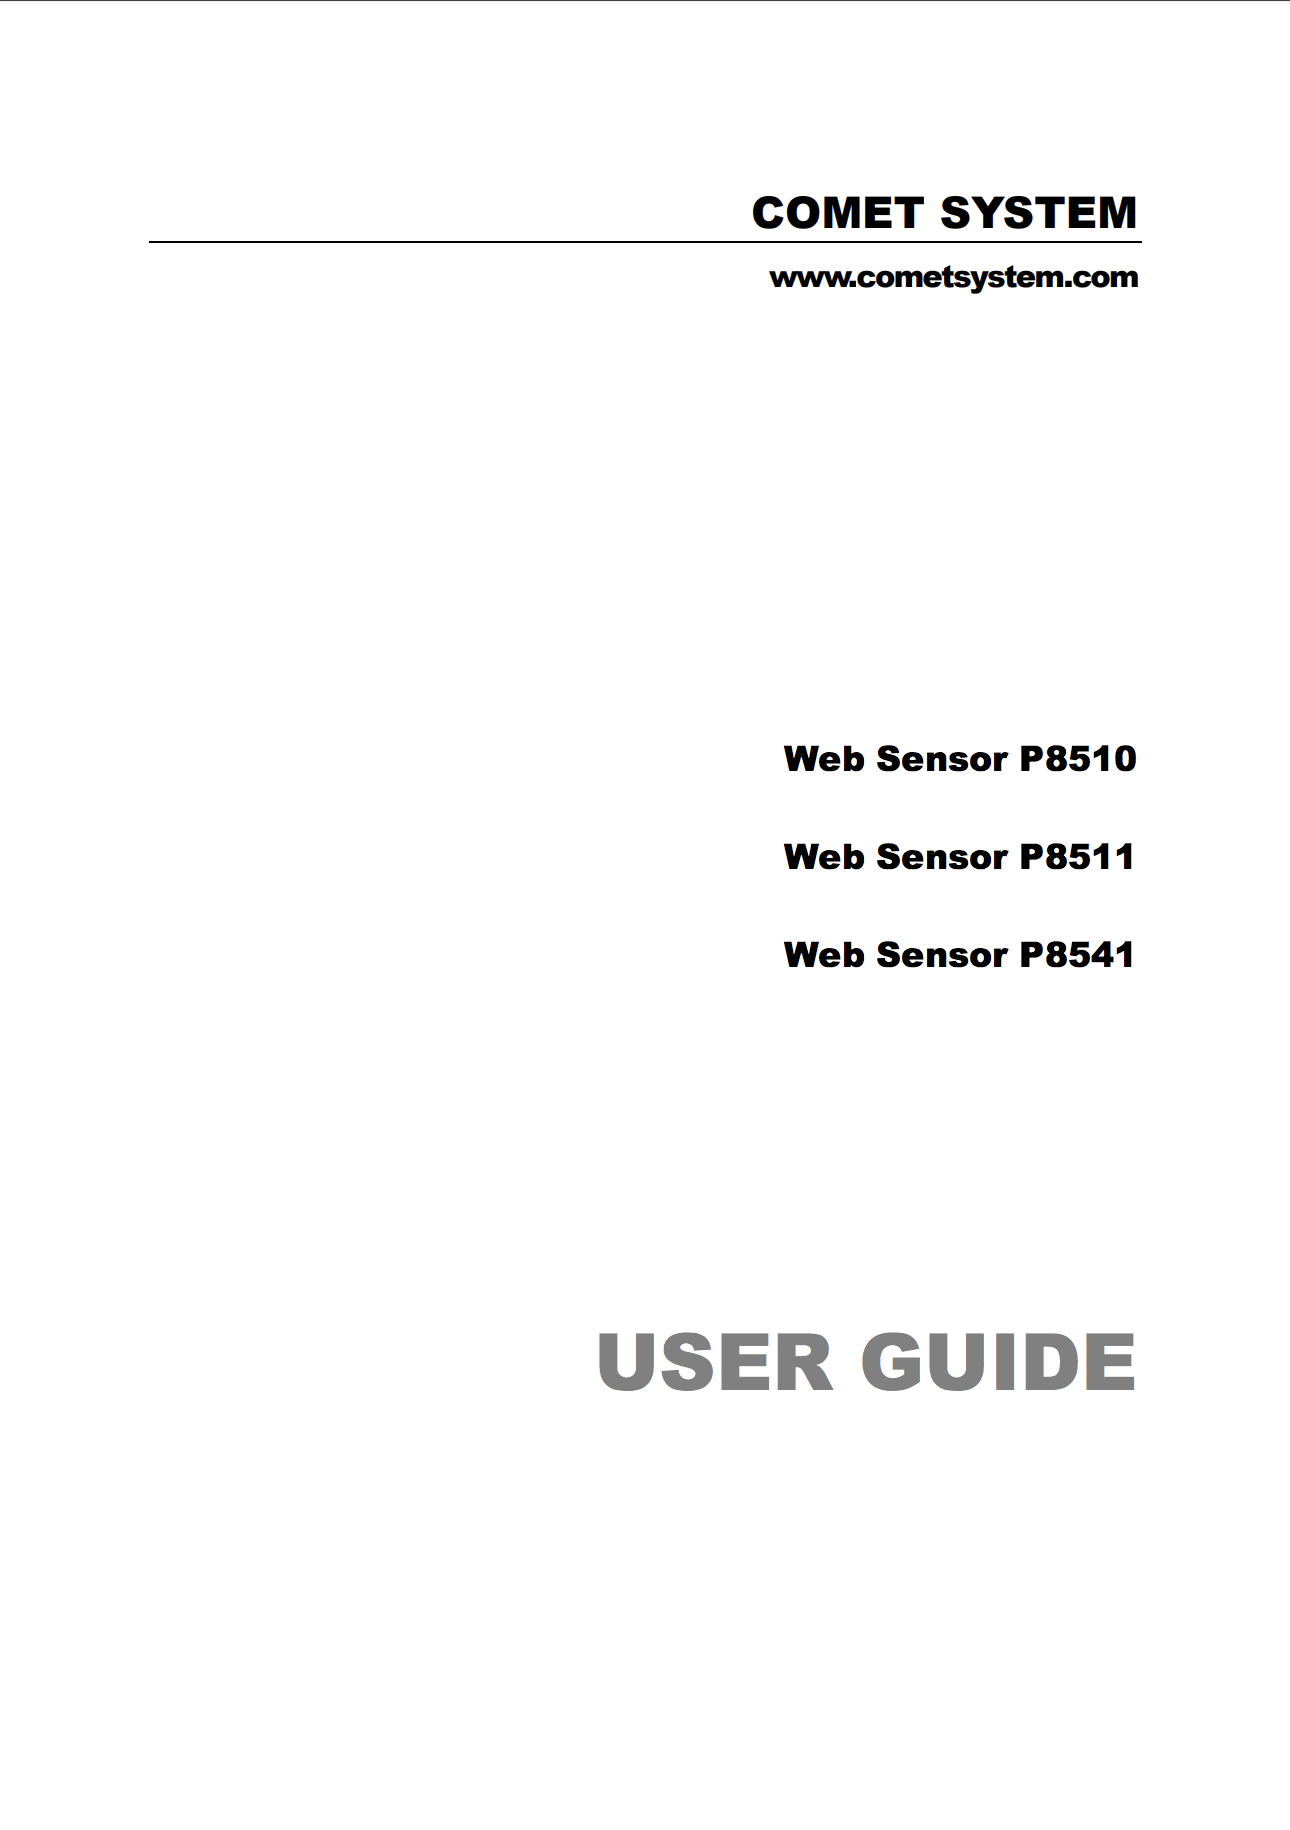 Comet User Guide Web Sensor P8511, P8541, P8510